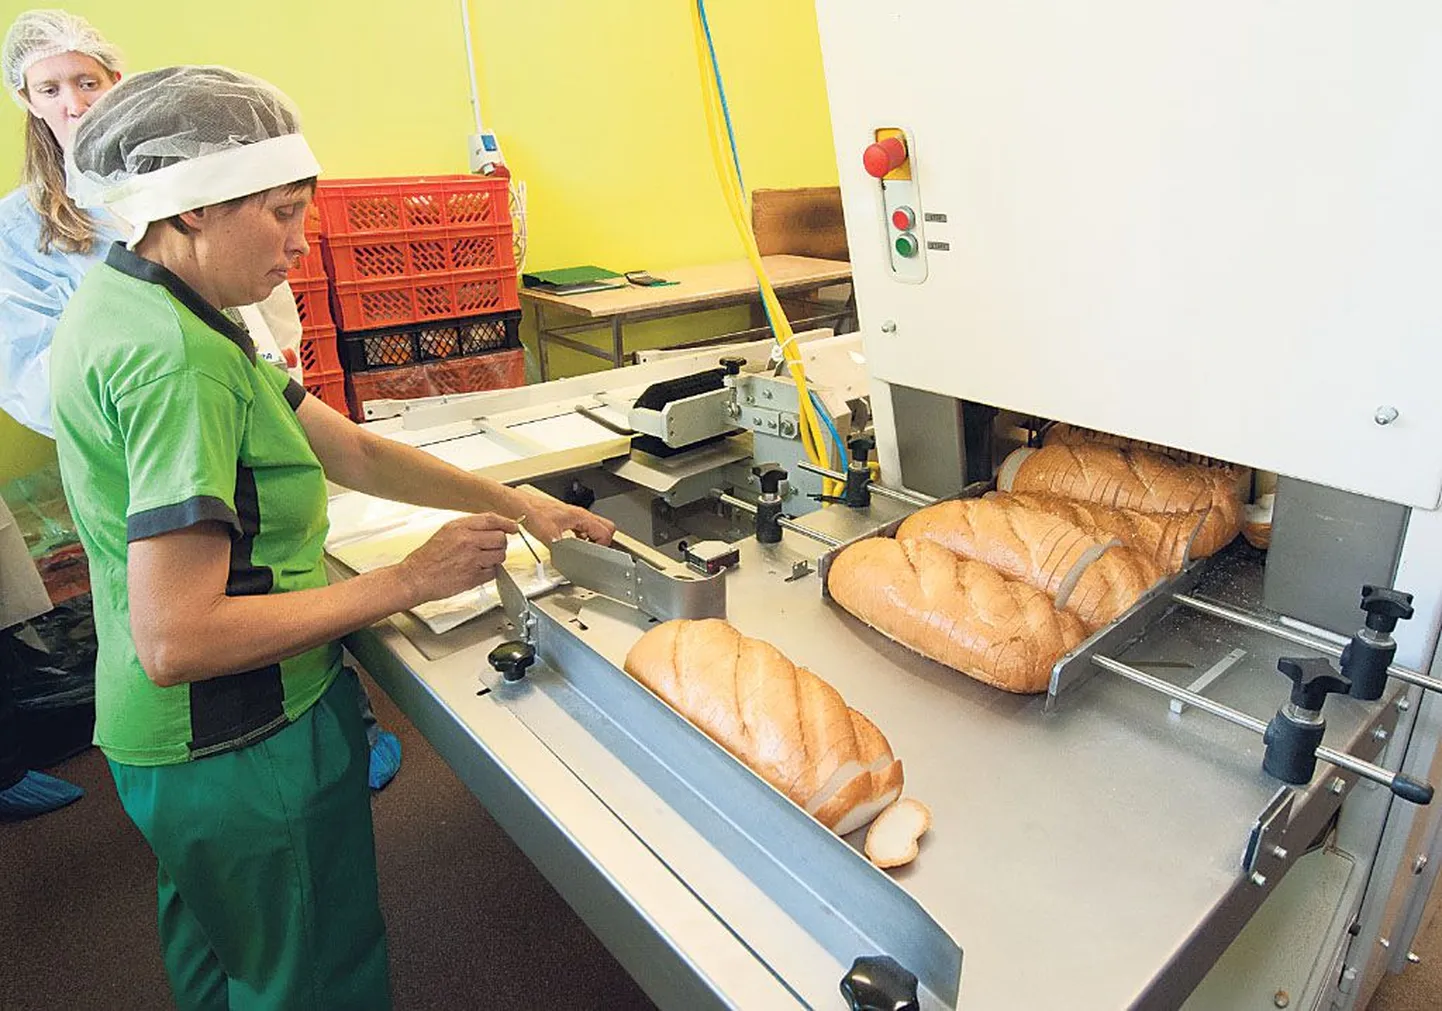 Vändra 20aastane leivatööstus on saanud uue sisseseade, ettevõte annab tööd paarikümnele inimesele.